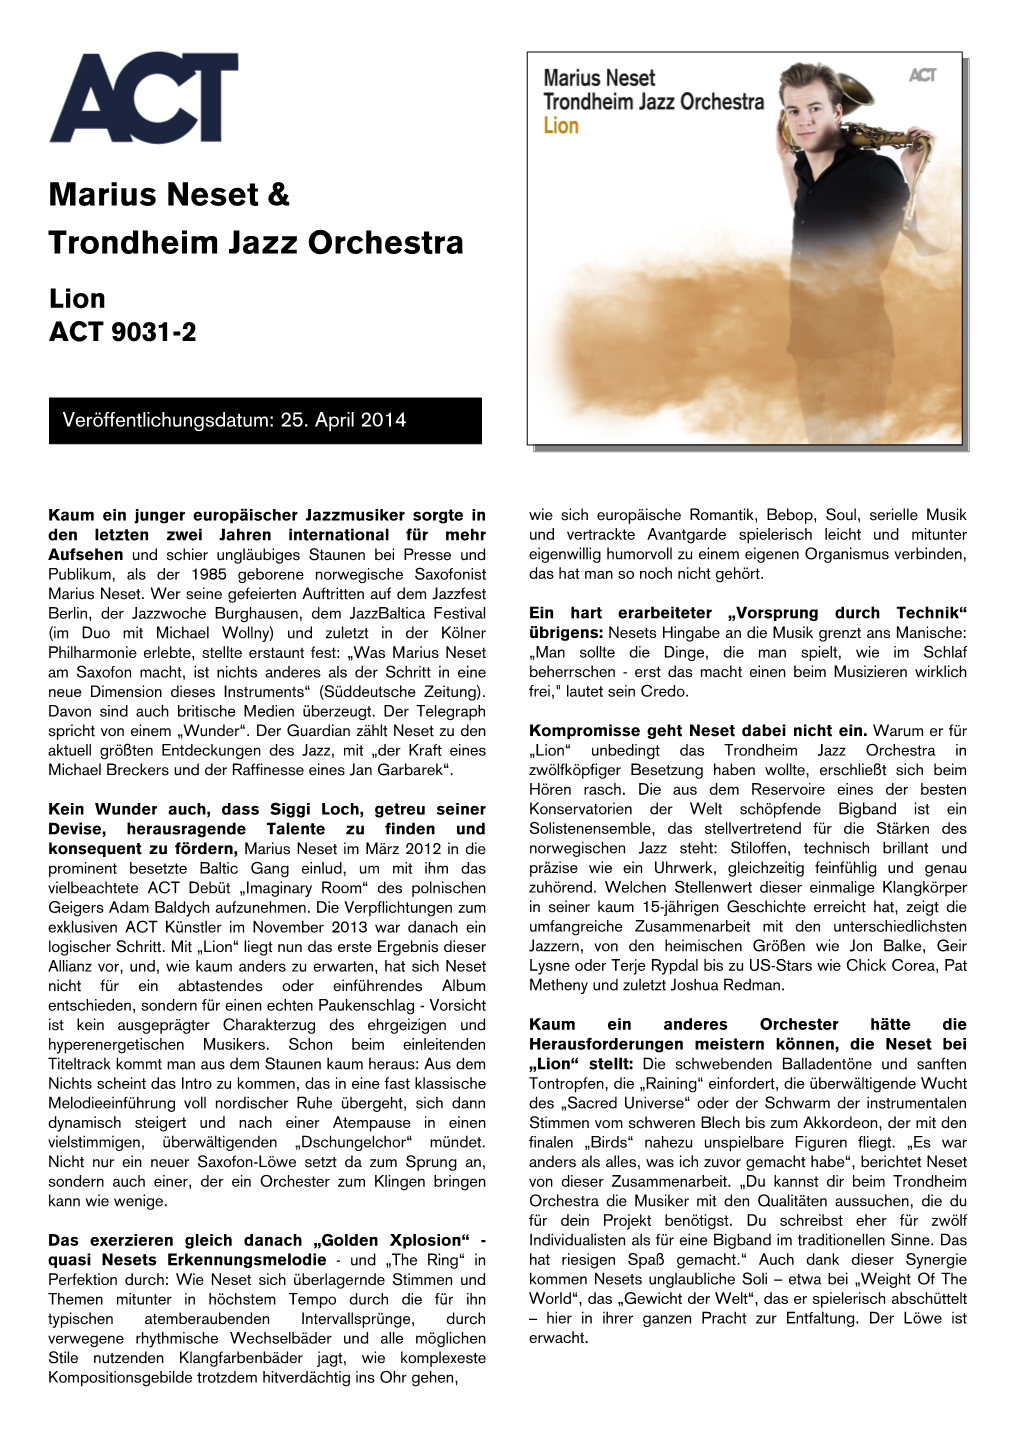 Marius Neset & Trondheim Jazz Orchestra